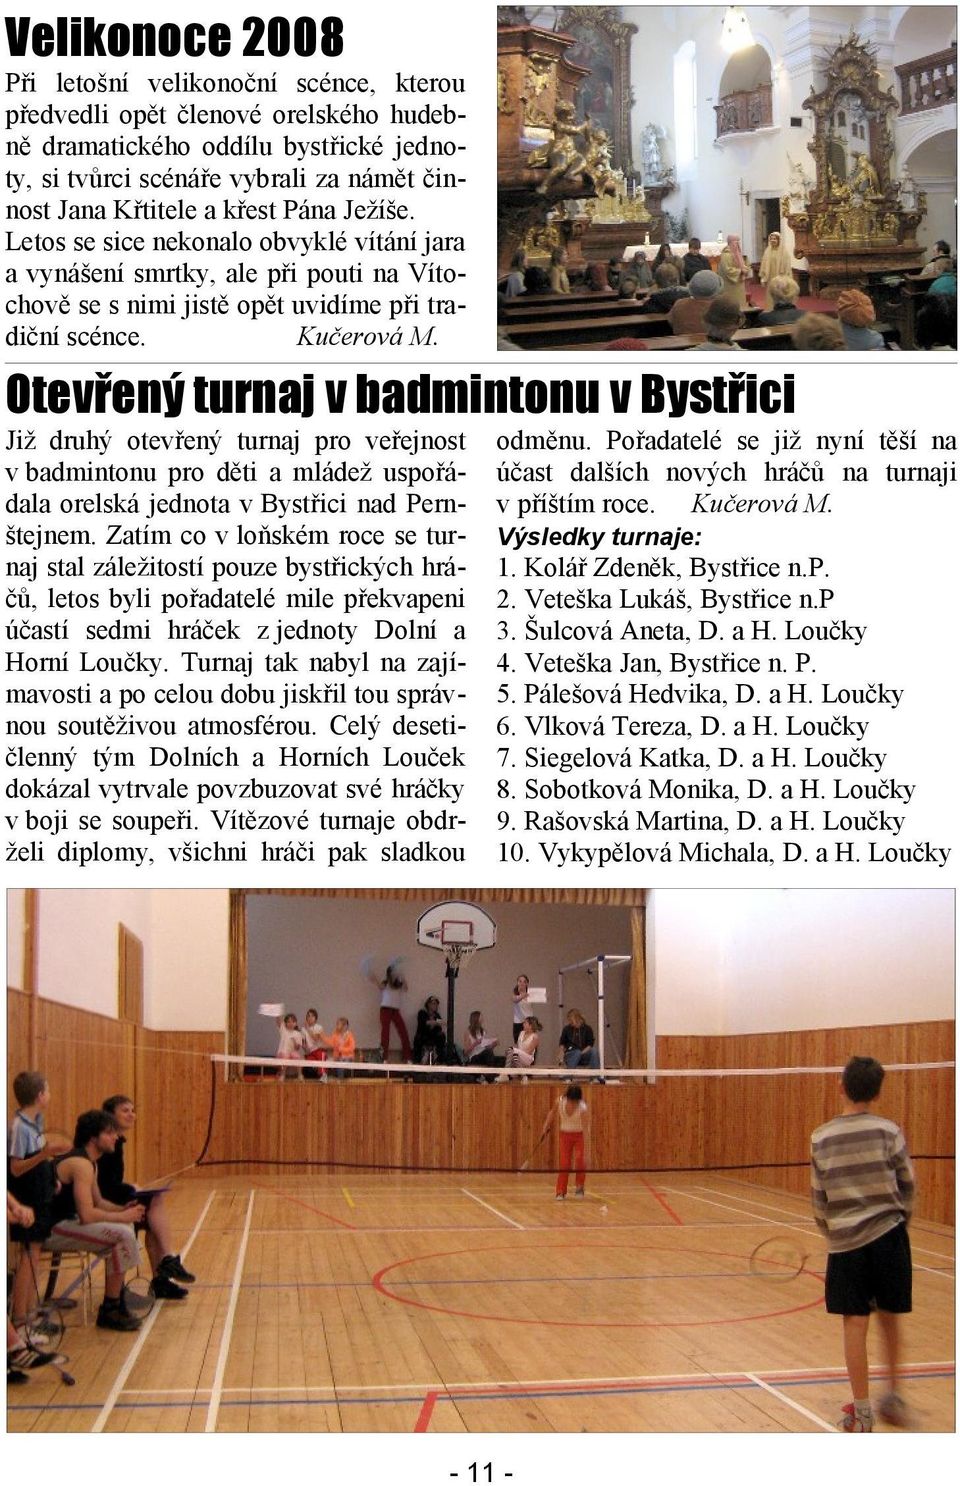 Otevřený turnaj v badmintonu v Bystřici Již druhý otevřený turnaj pro veřejnost v badmintonu pro děti a mládež uspořádala orelská jednota v Bystřici nad Pernštejnem.